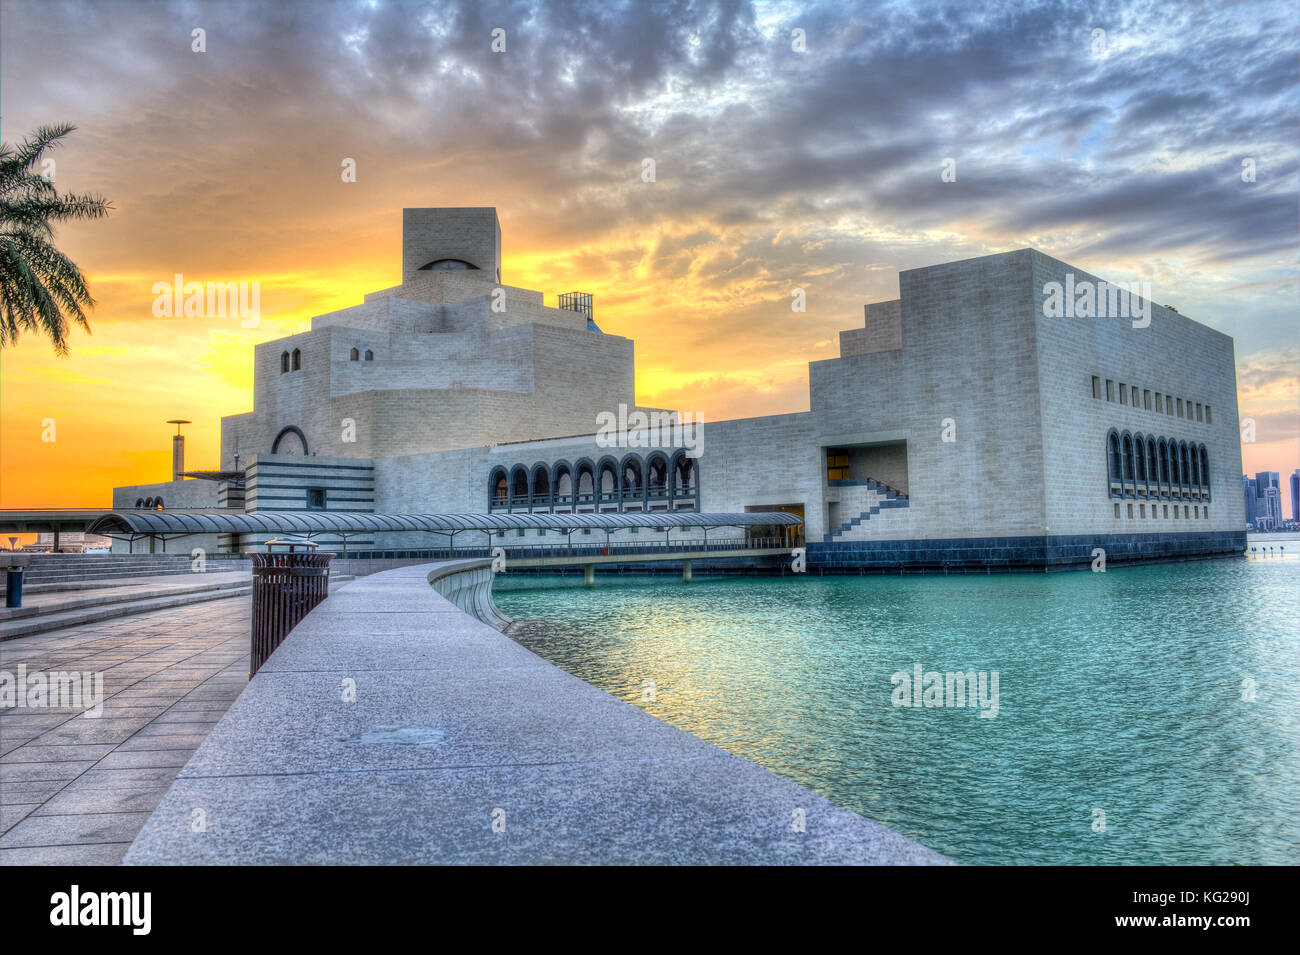 Il Museo di Arte islamica ,,di Doha in Qatar in condizioni di luce diurna esterna con vista golfo arabo in primo piano e le nuvole nel cielo in background Foto Stock